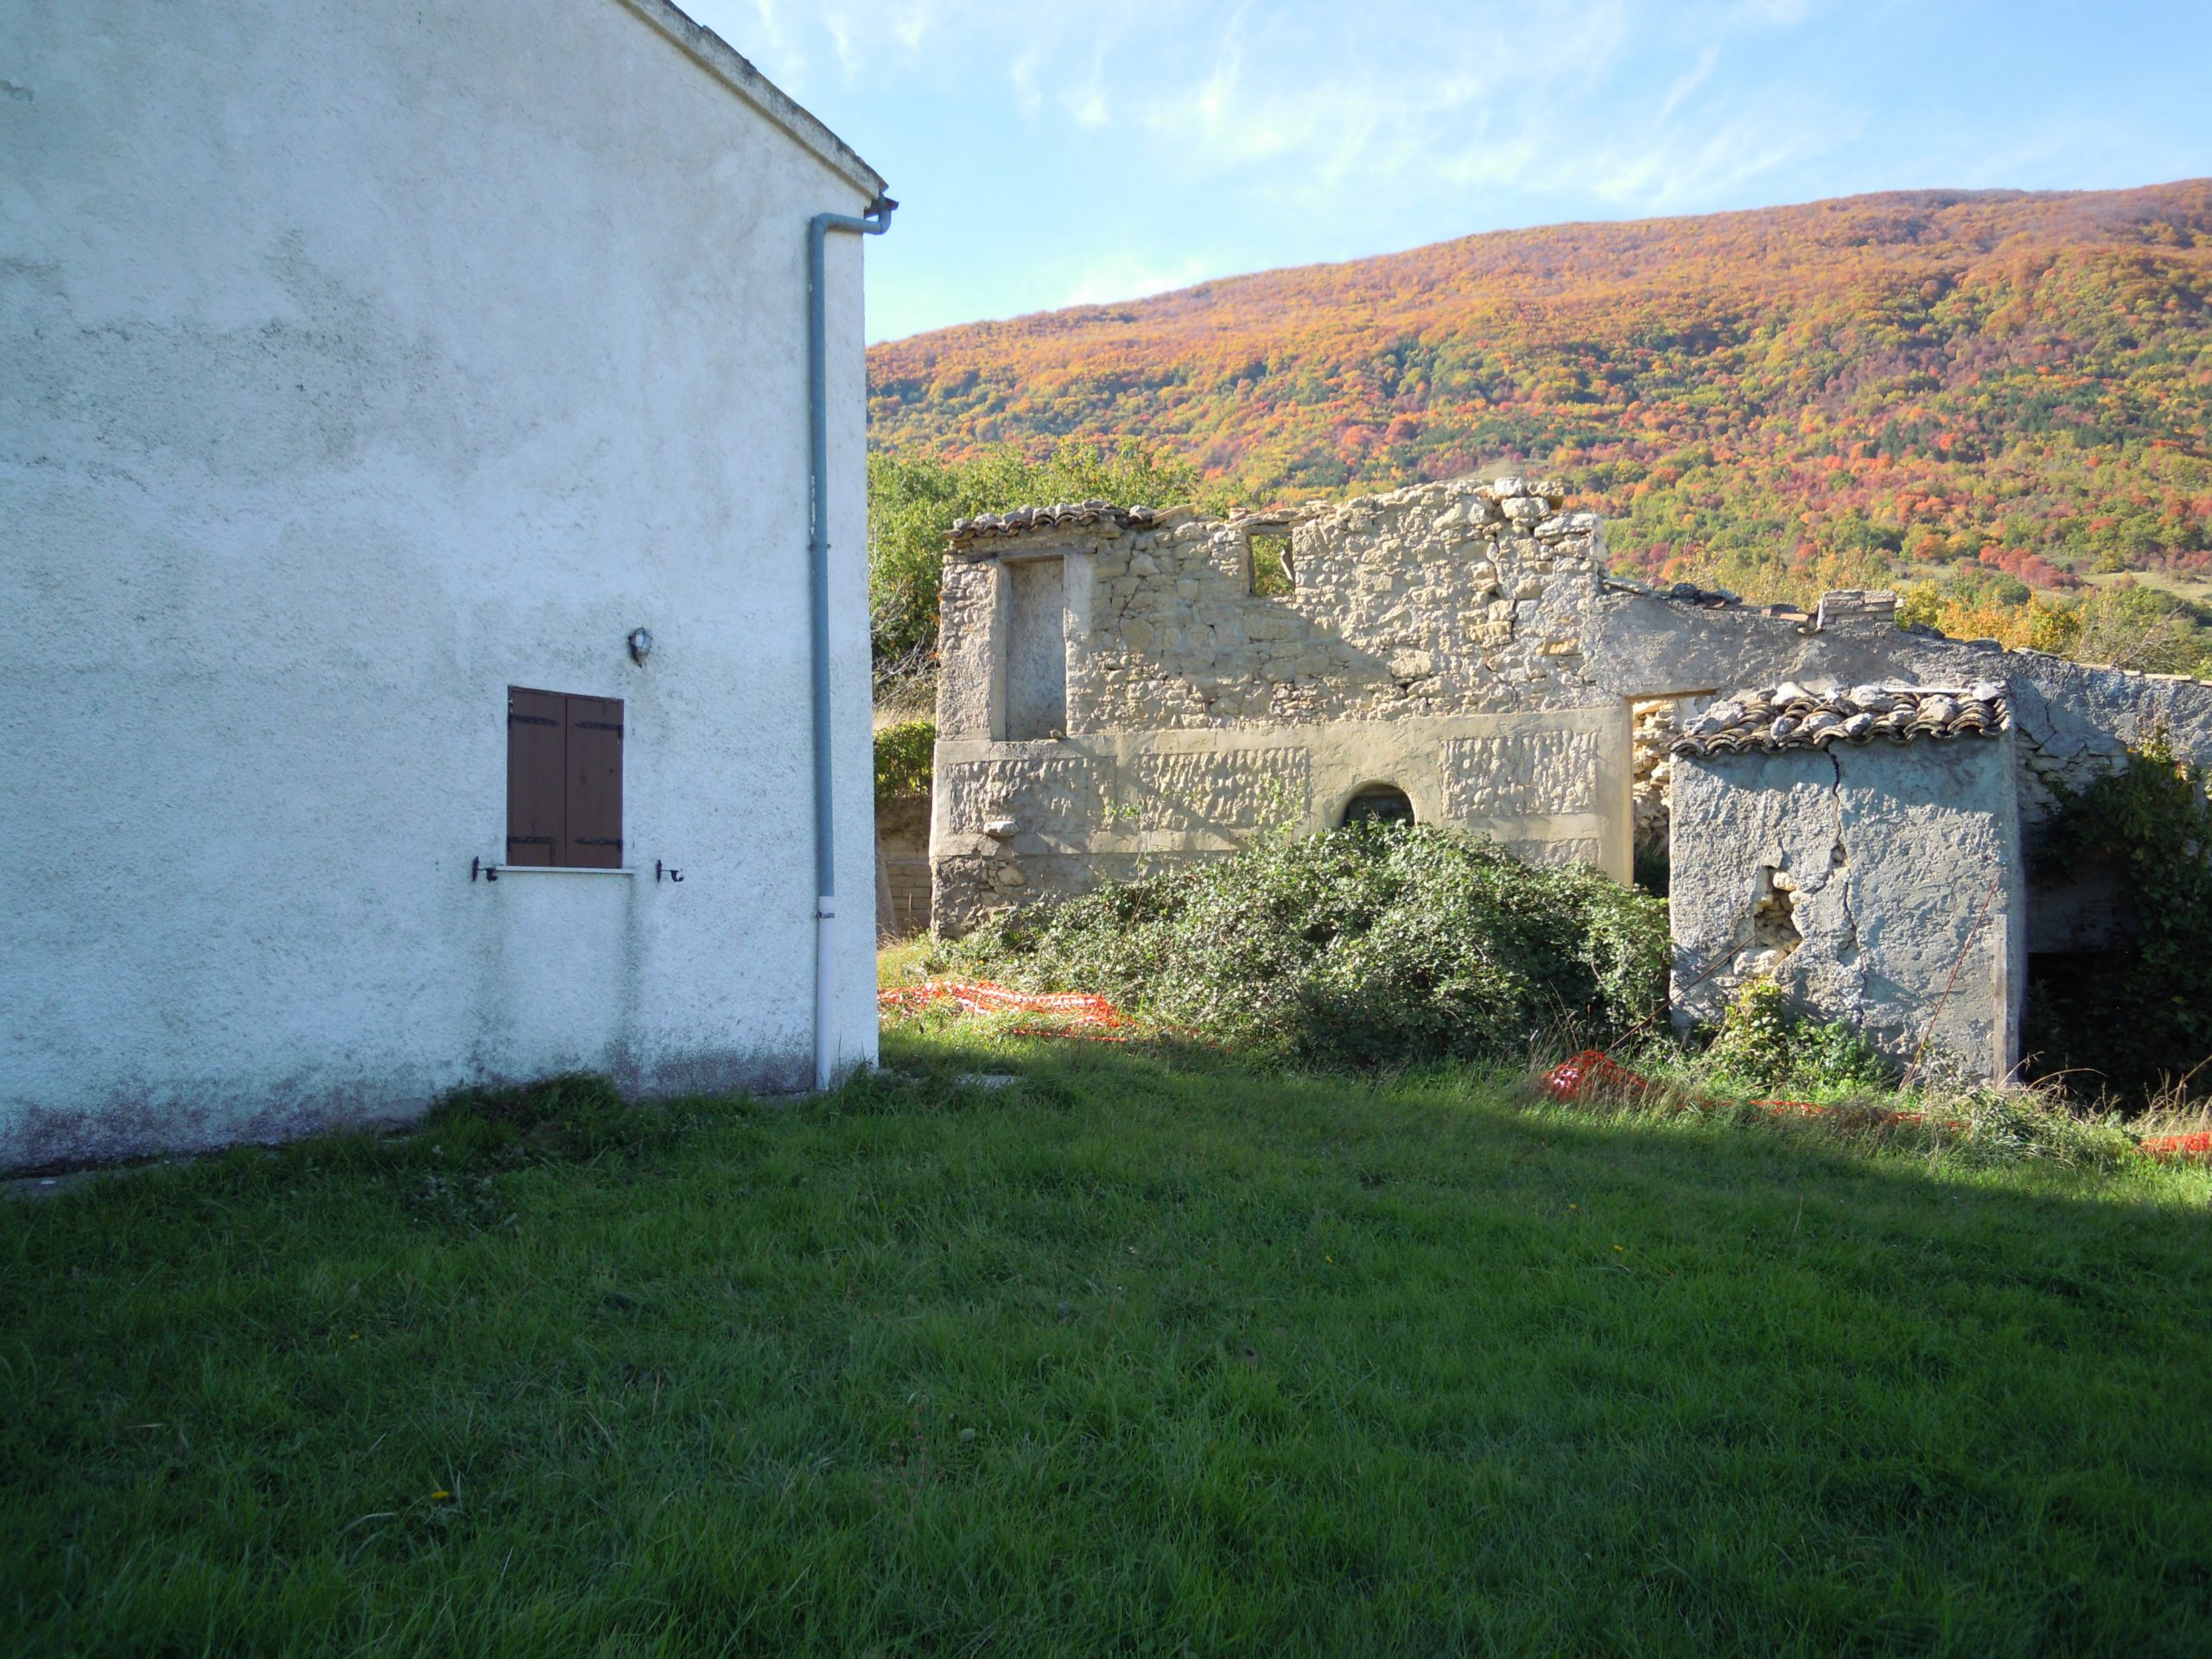 rechts de oude ruine naast het huis